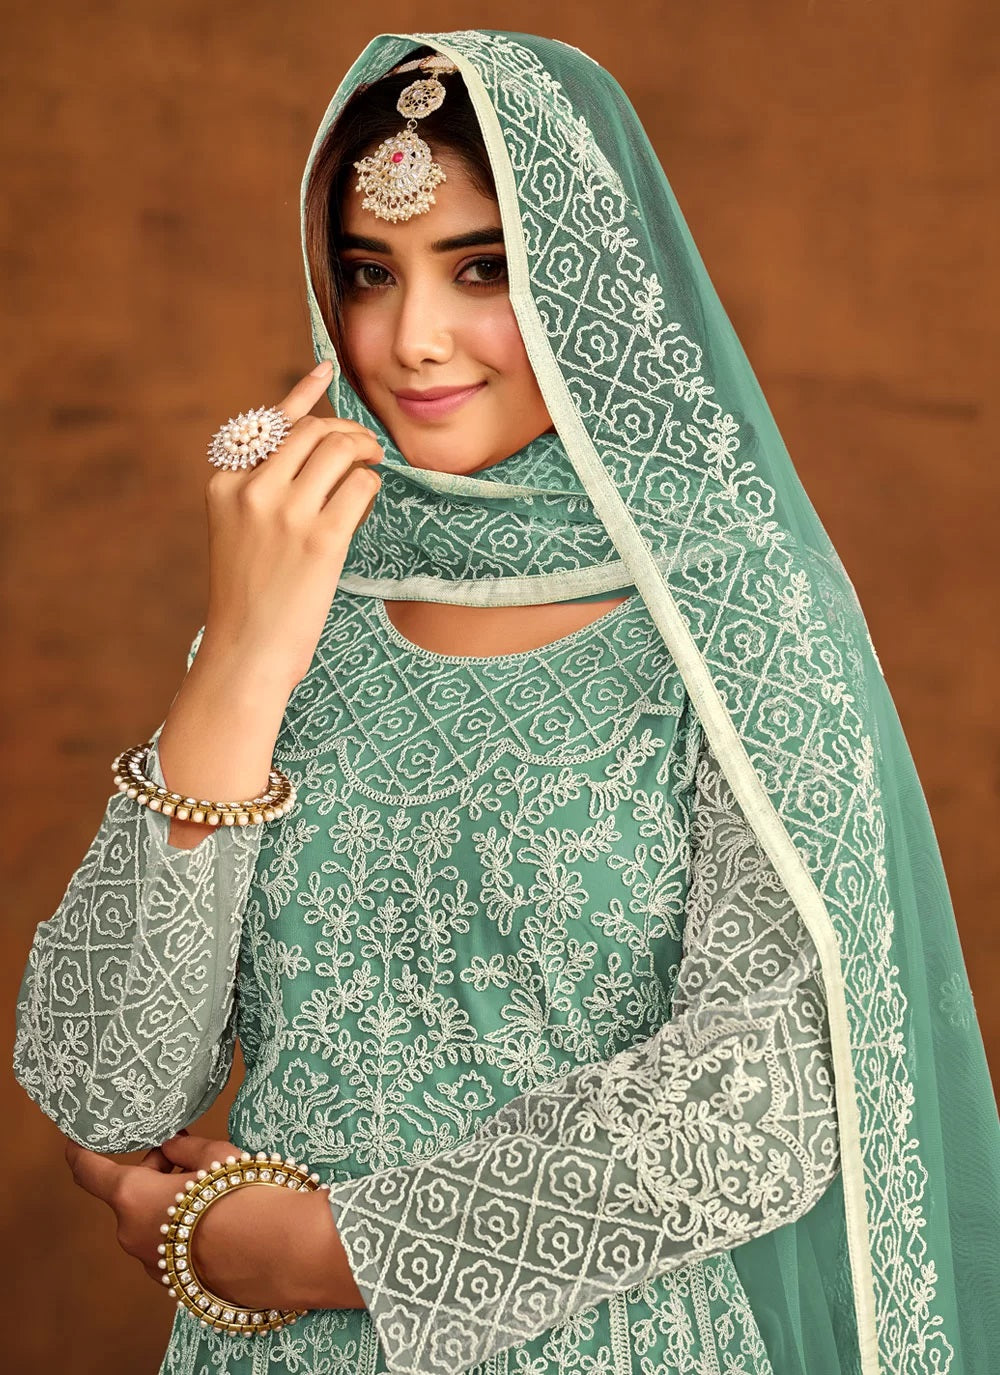 Elegant Green Net Embroidered Anarkali Suit